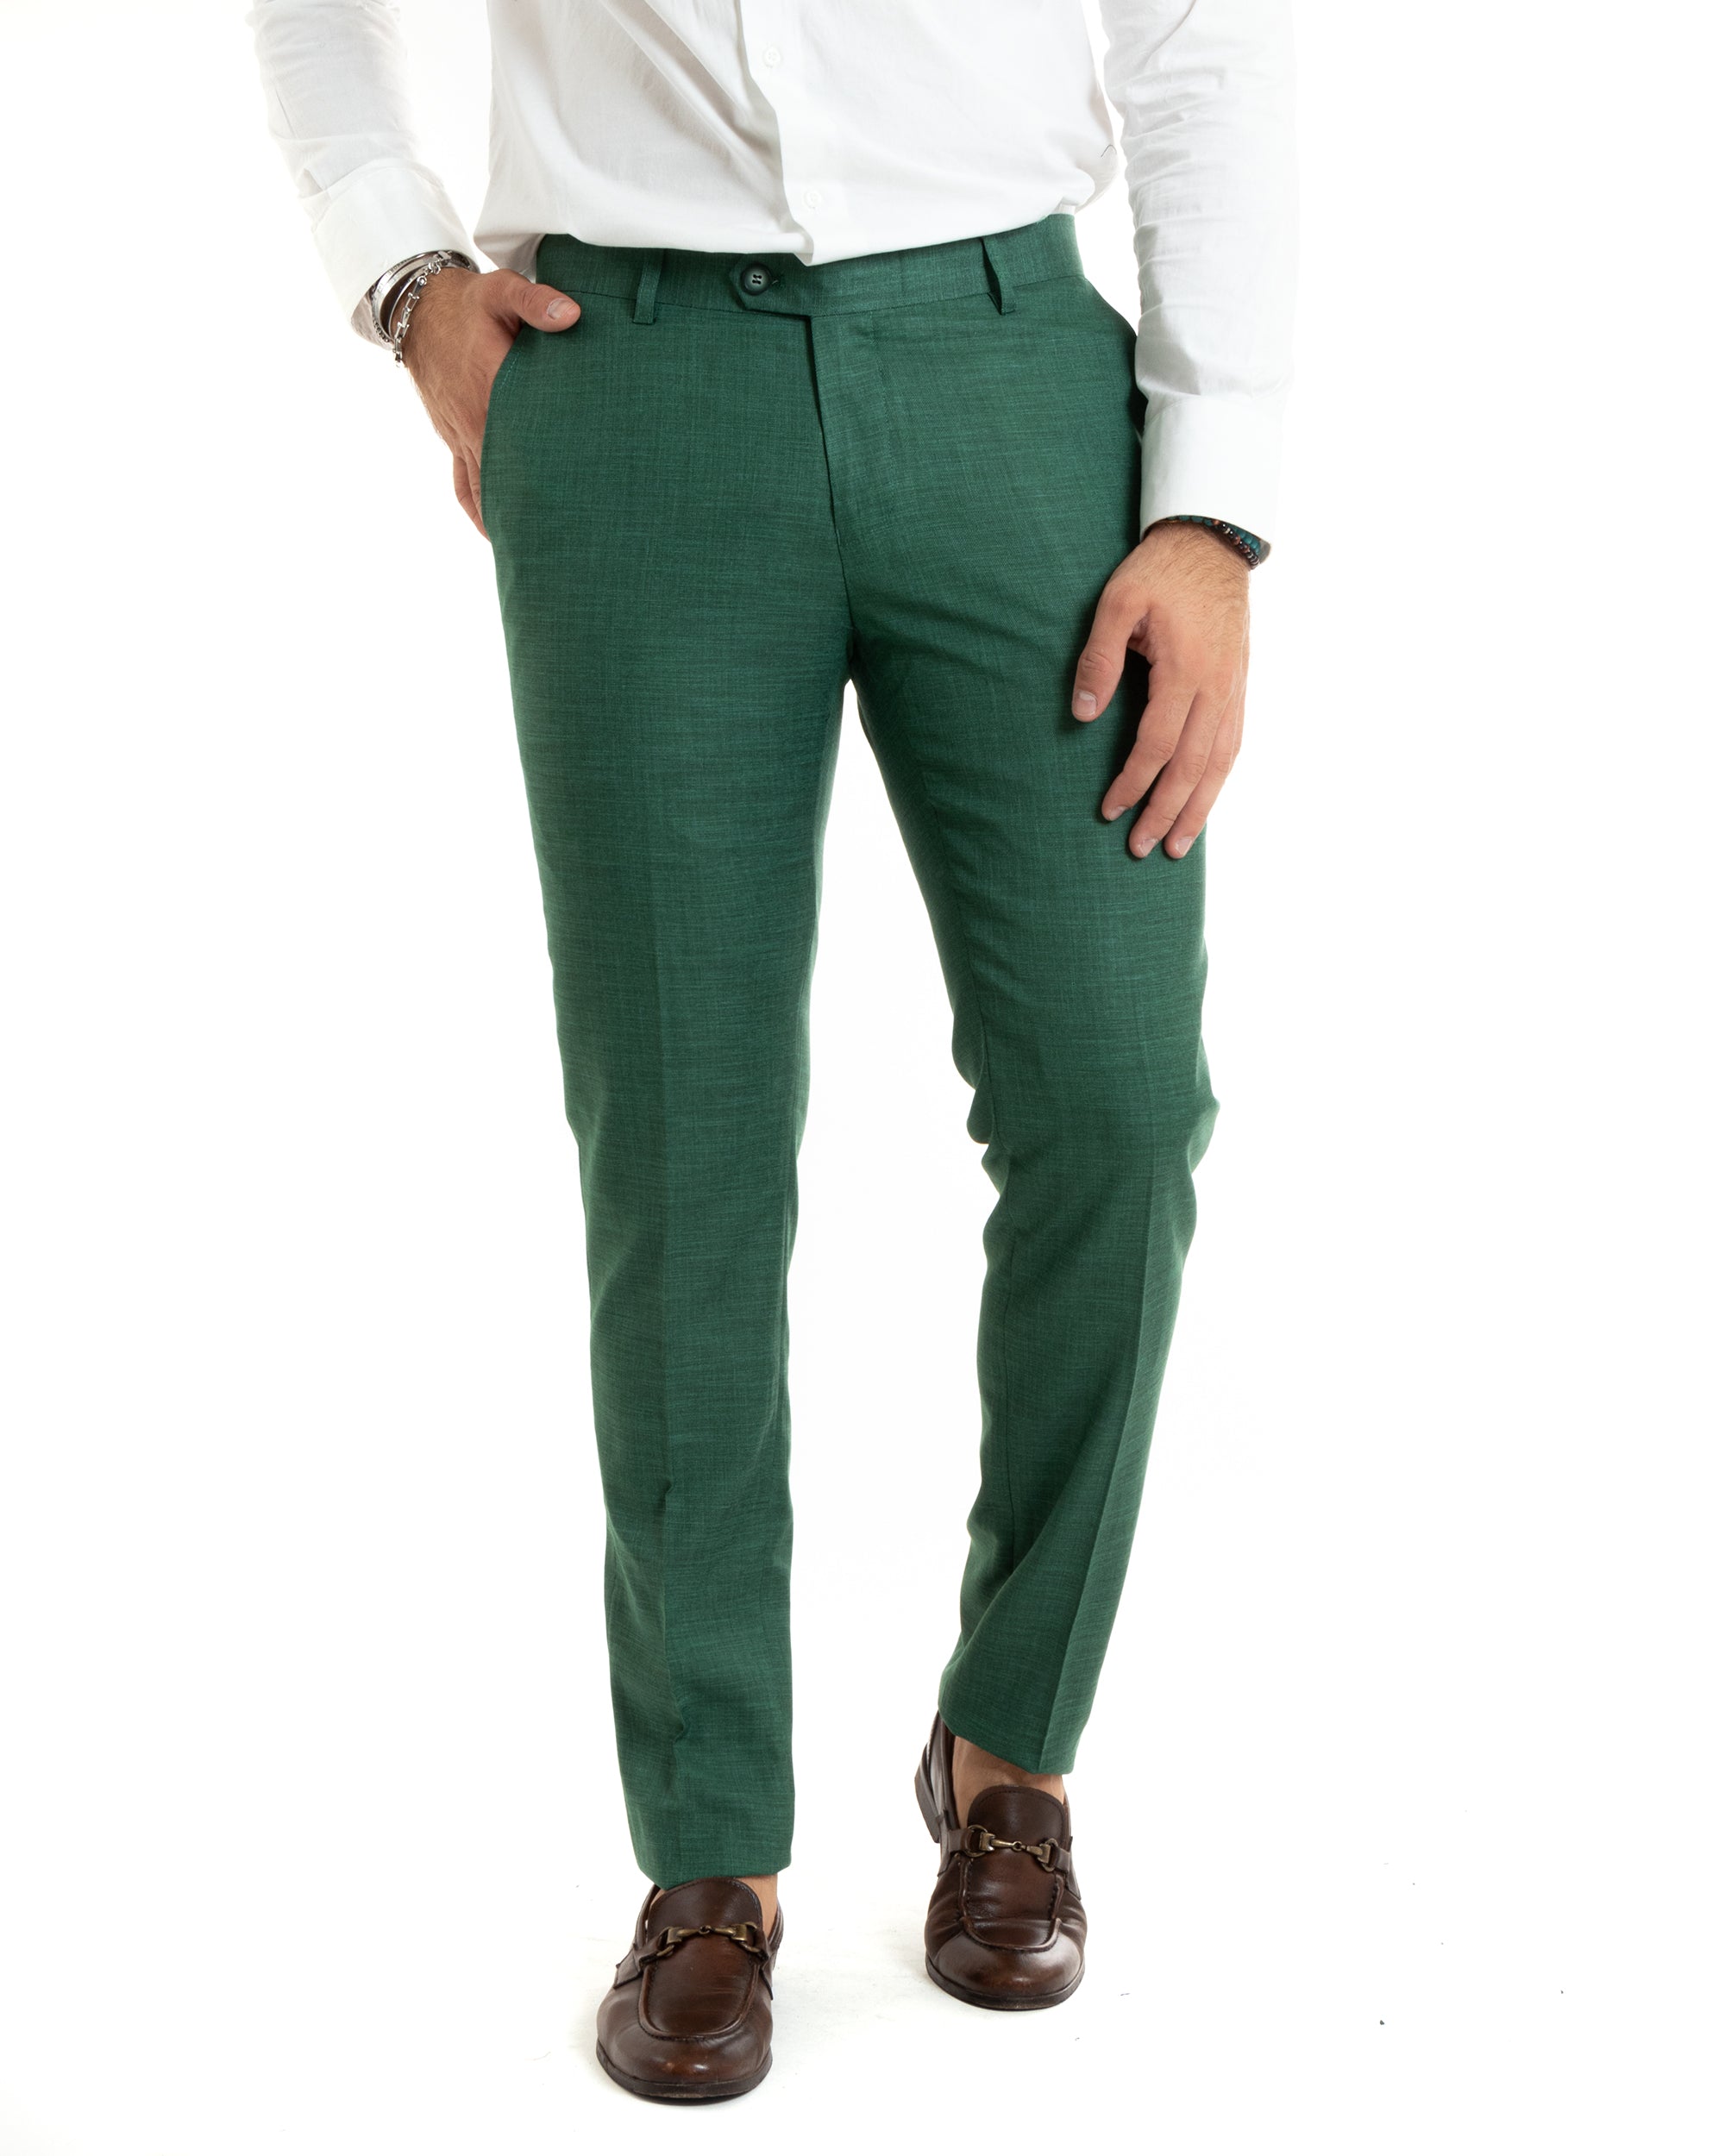 Abito Uomo Monopetto Vestito Completo Giacca Pantaloni Verde Elegante Casual GIOSAL-OU2427A